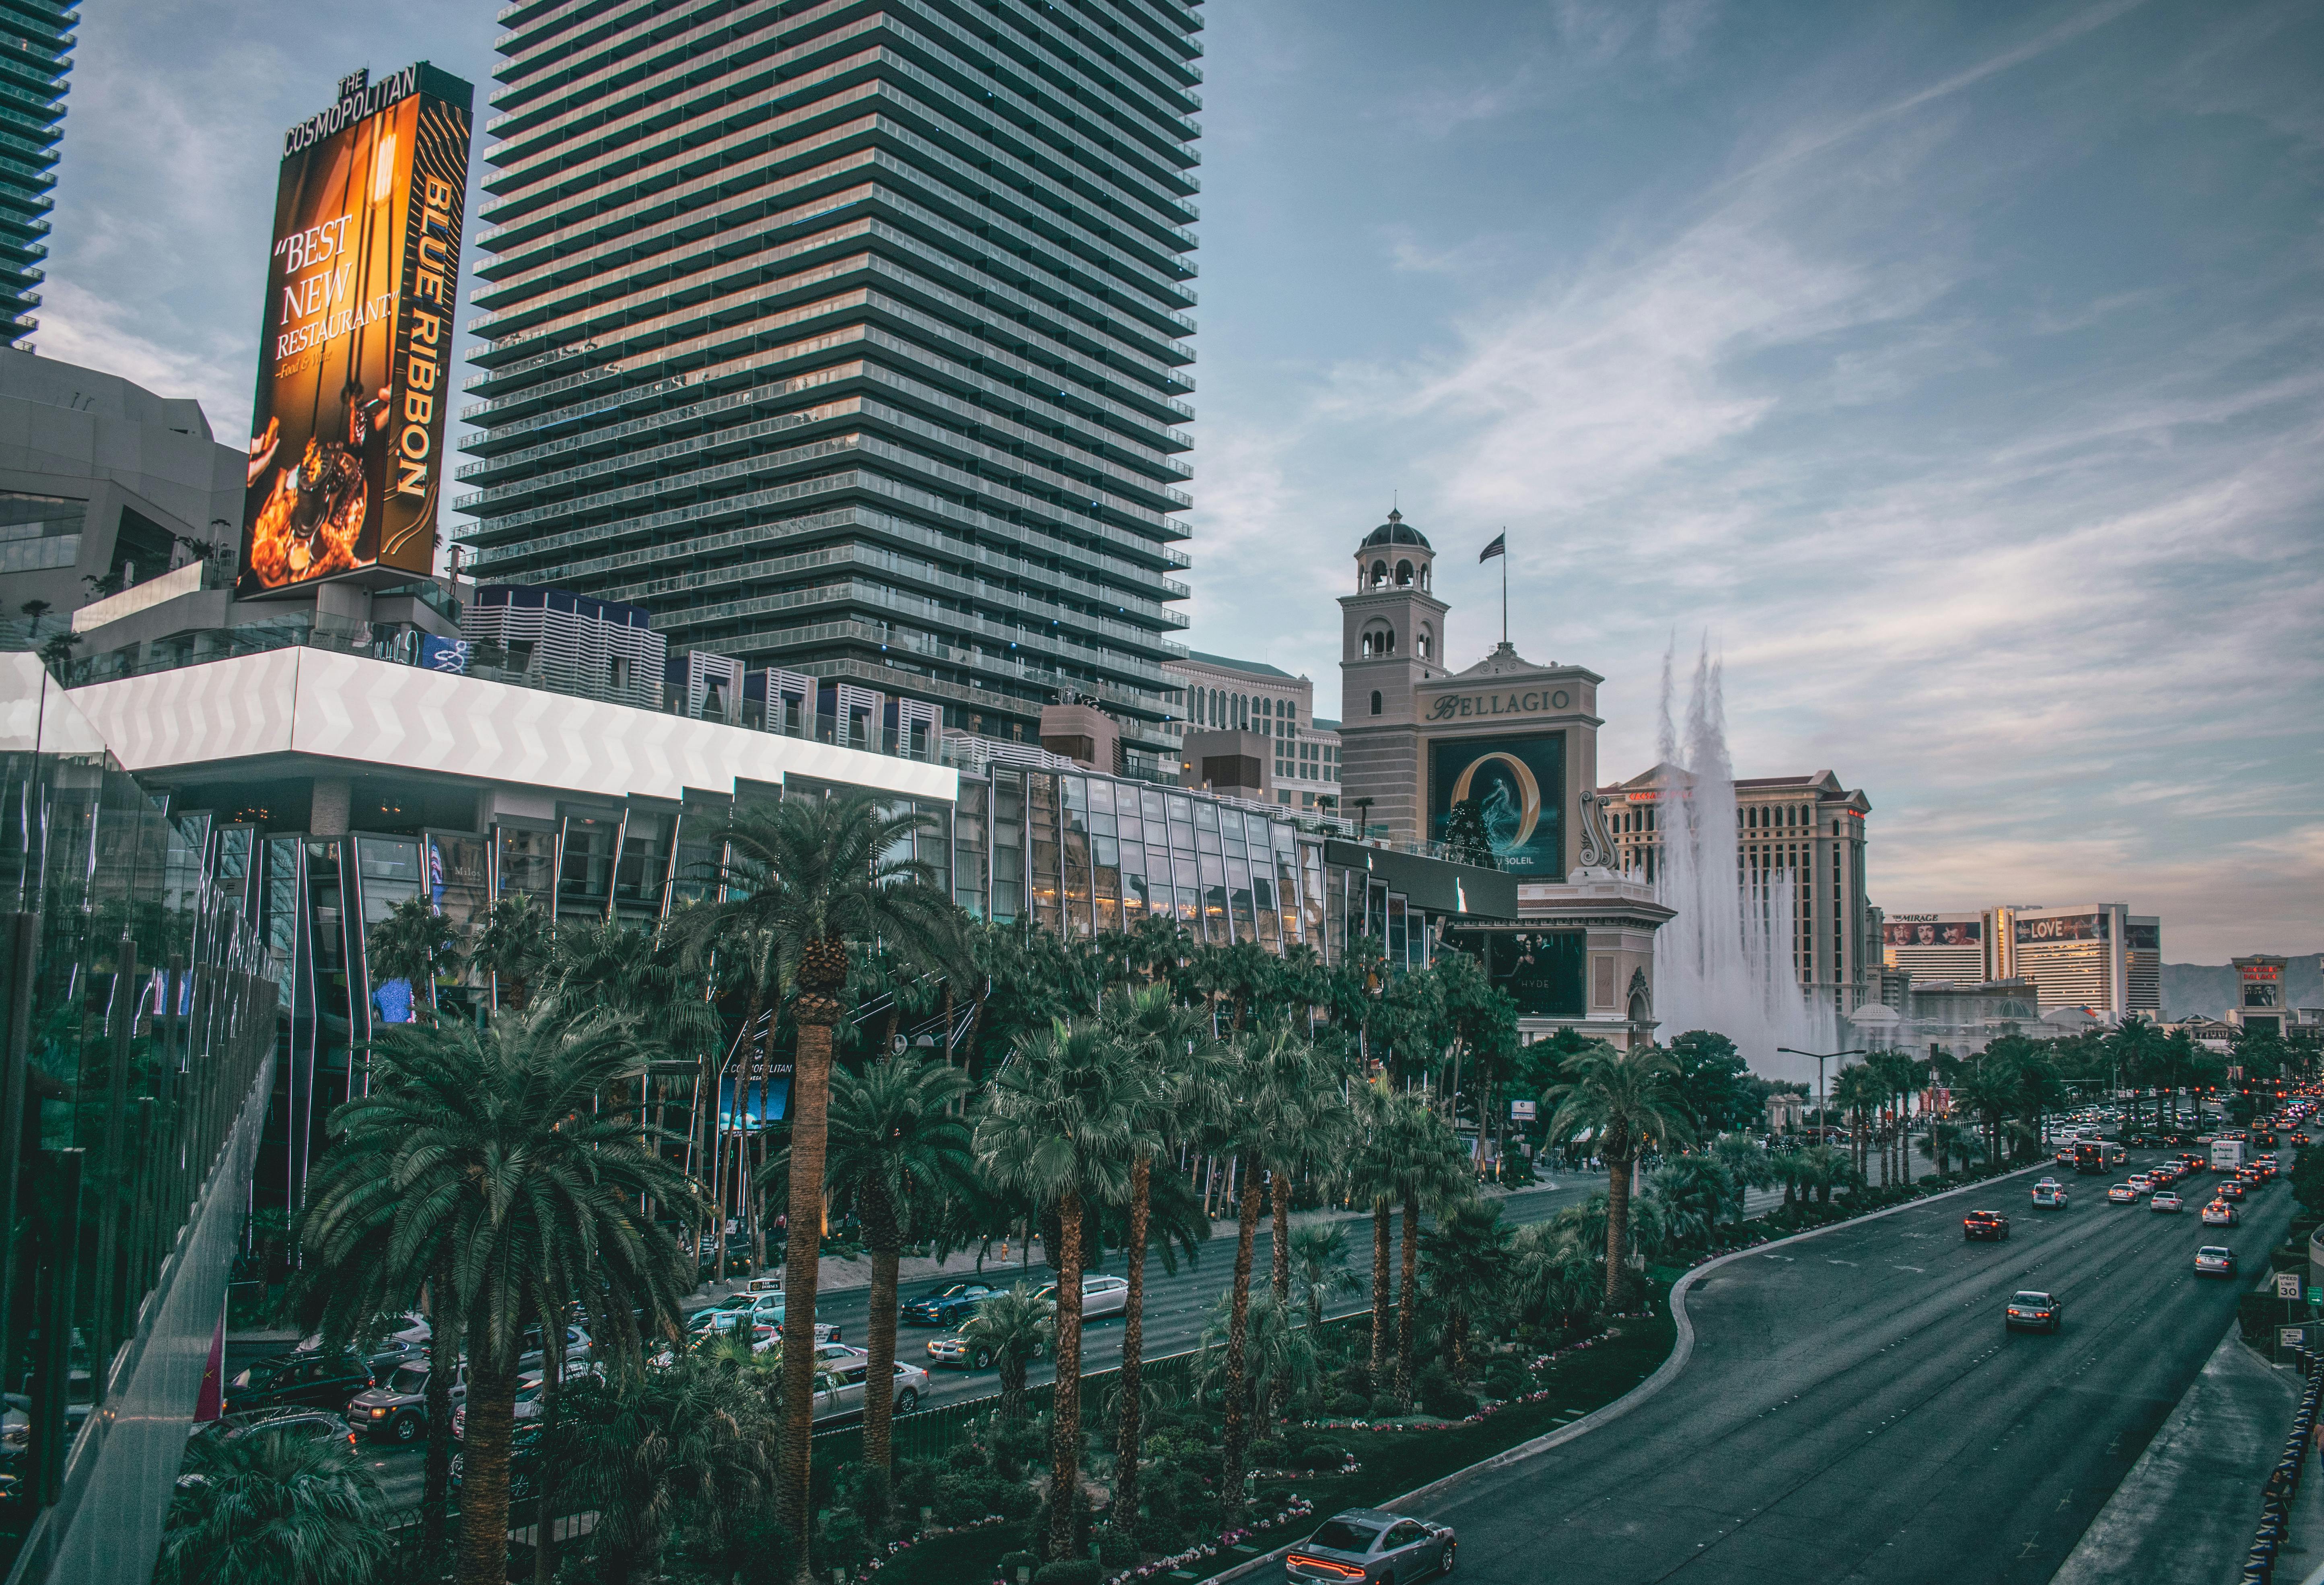 Del desierto a la “meca” del juego: ¿Cómo se convirtió Las Vegas en lo que es hoy?